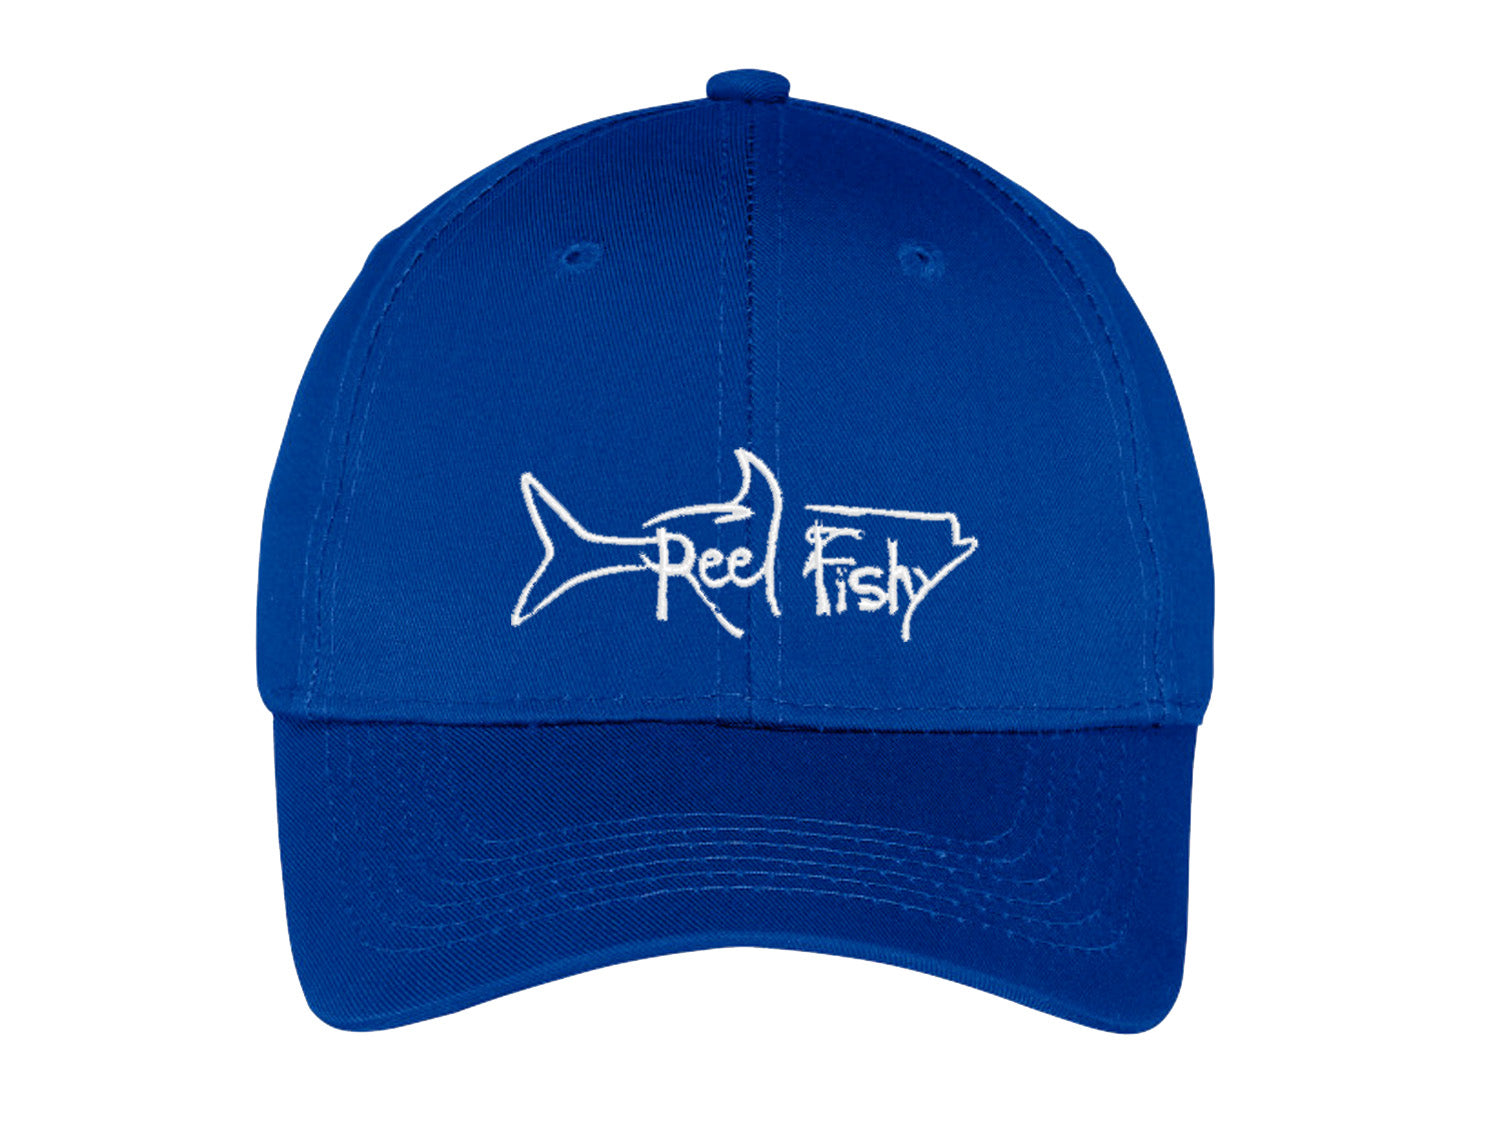 Youth Best Friend Trucker Hat - Kid's Fishing Hat